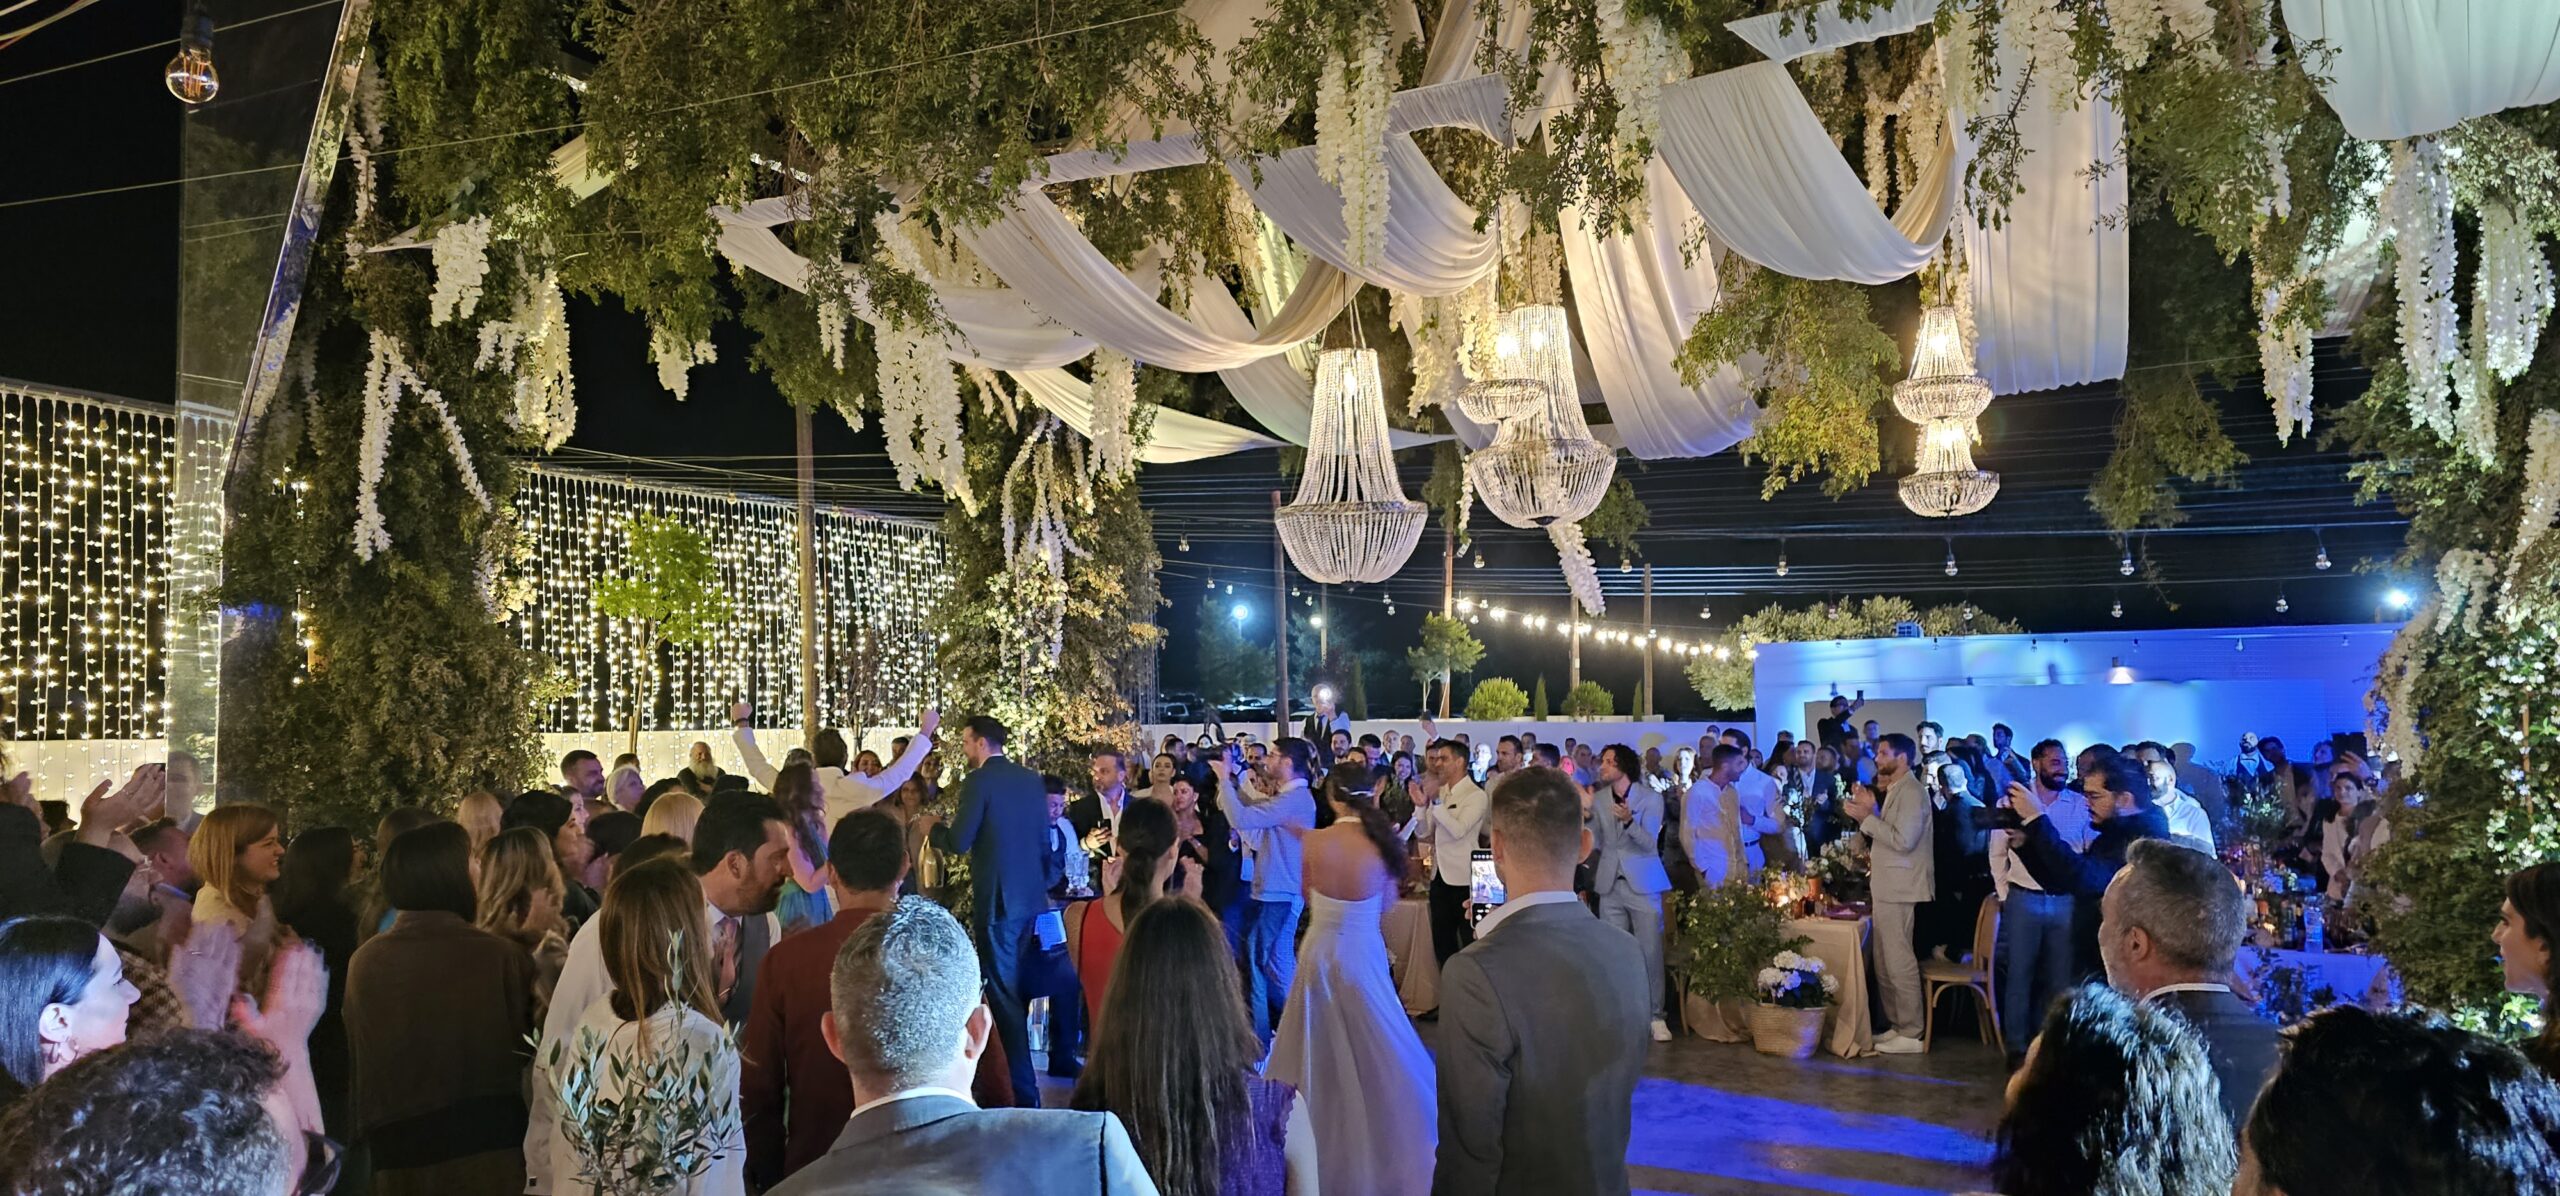 ΛΟΥΚΑΣ ΓΙΩΡΚΑΣ: Είσοδος στο γαμήλιο πάρτυ με ντουέτο